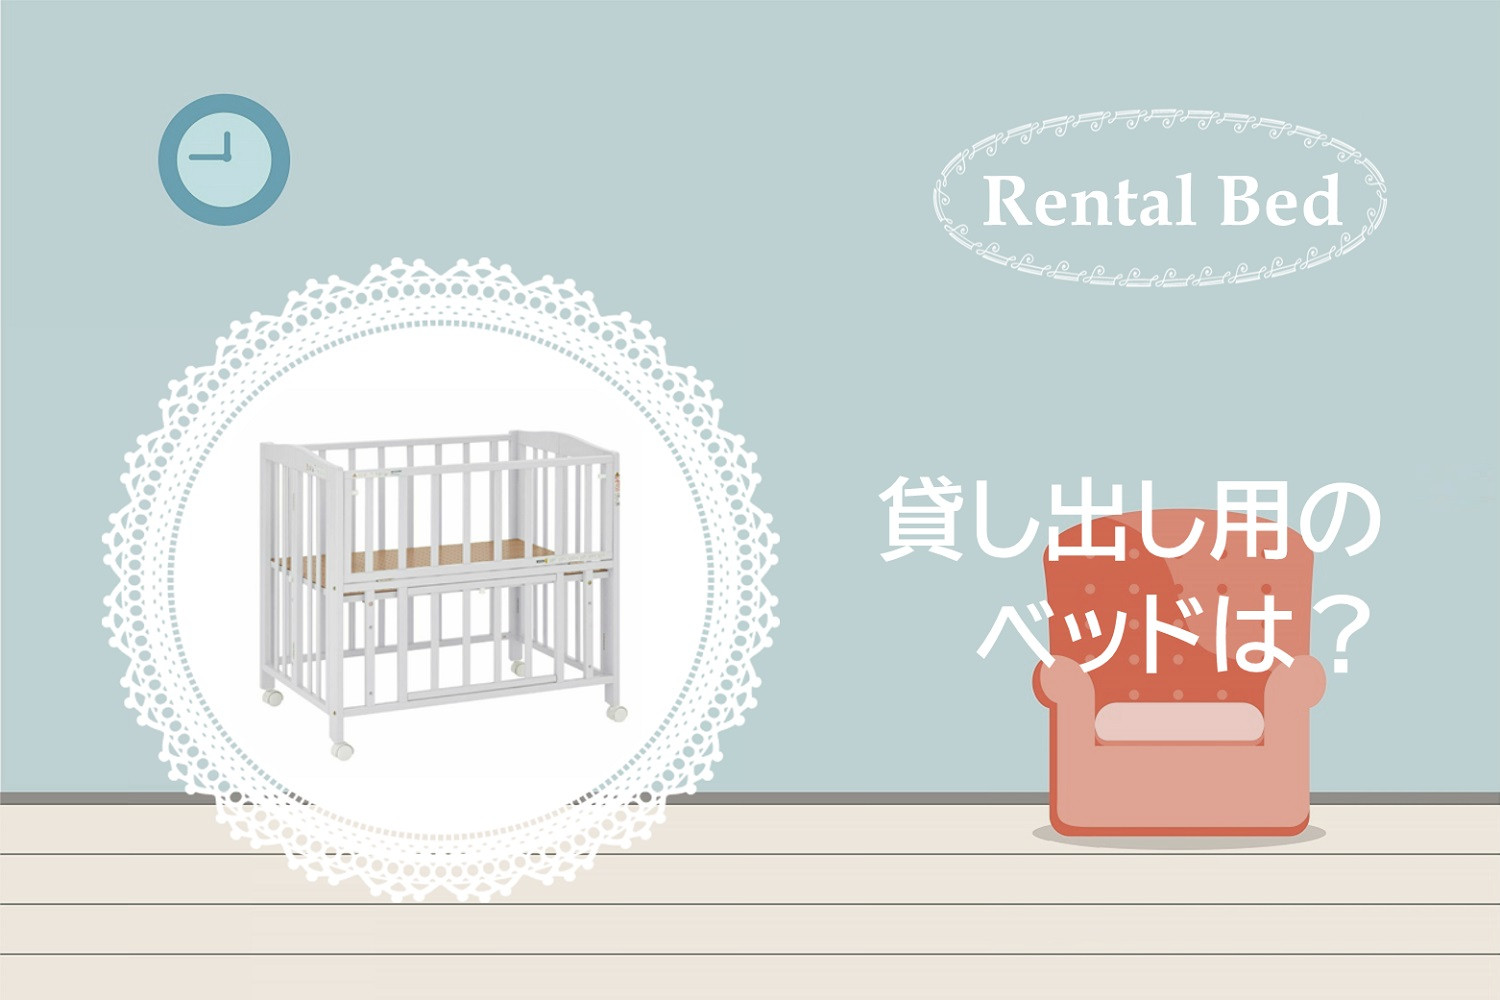 愛知県西尾市で小さな平屋をつくるテクネトライのベビーベッドプロジェクト貸出するベッド